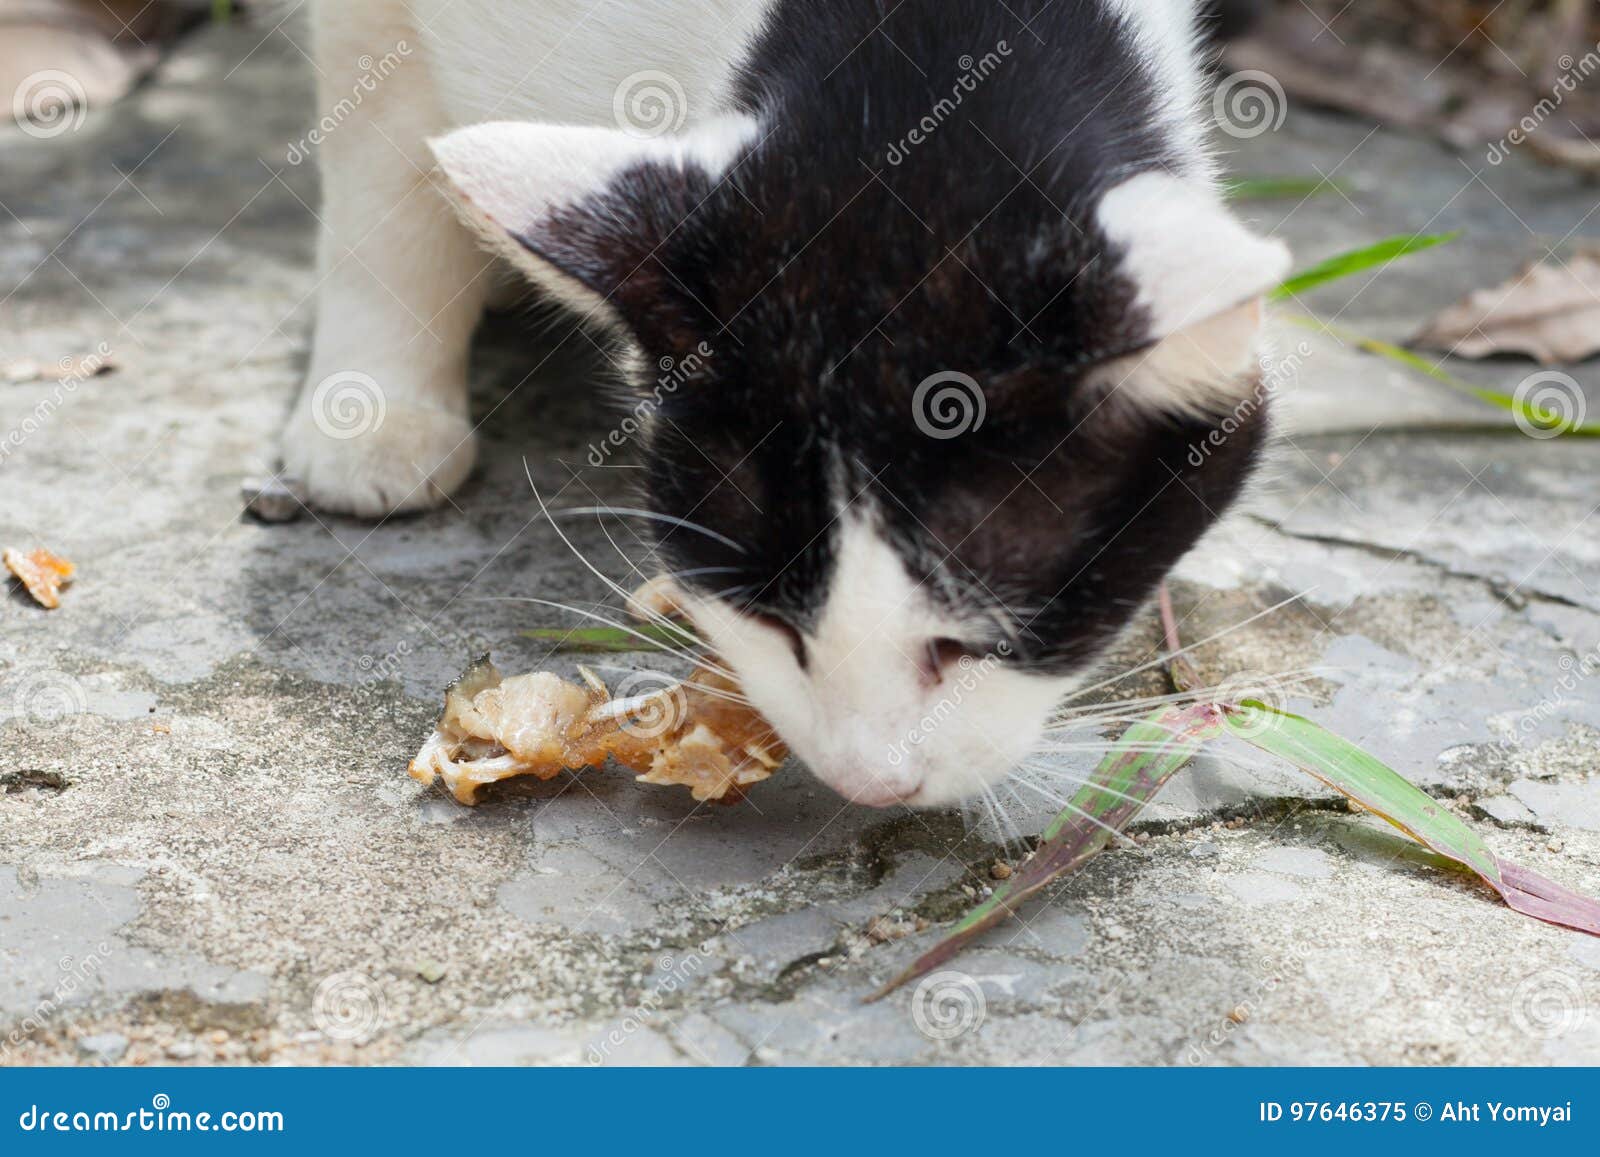 stray cats eat fish bones stray cats eat fish bones south thailand 97646375